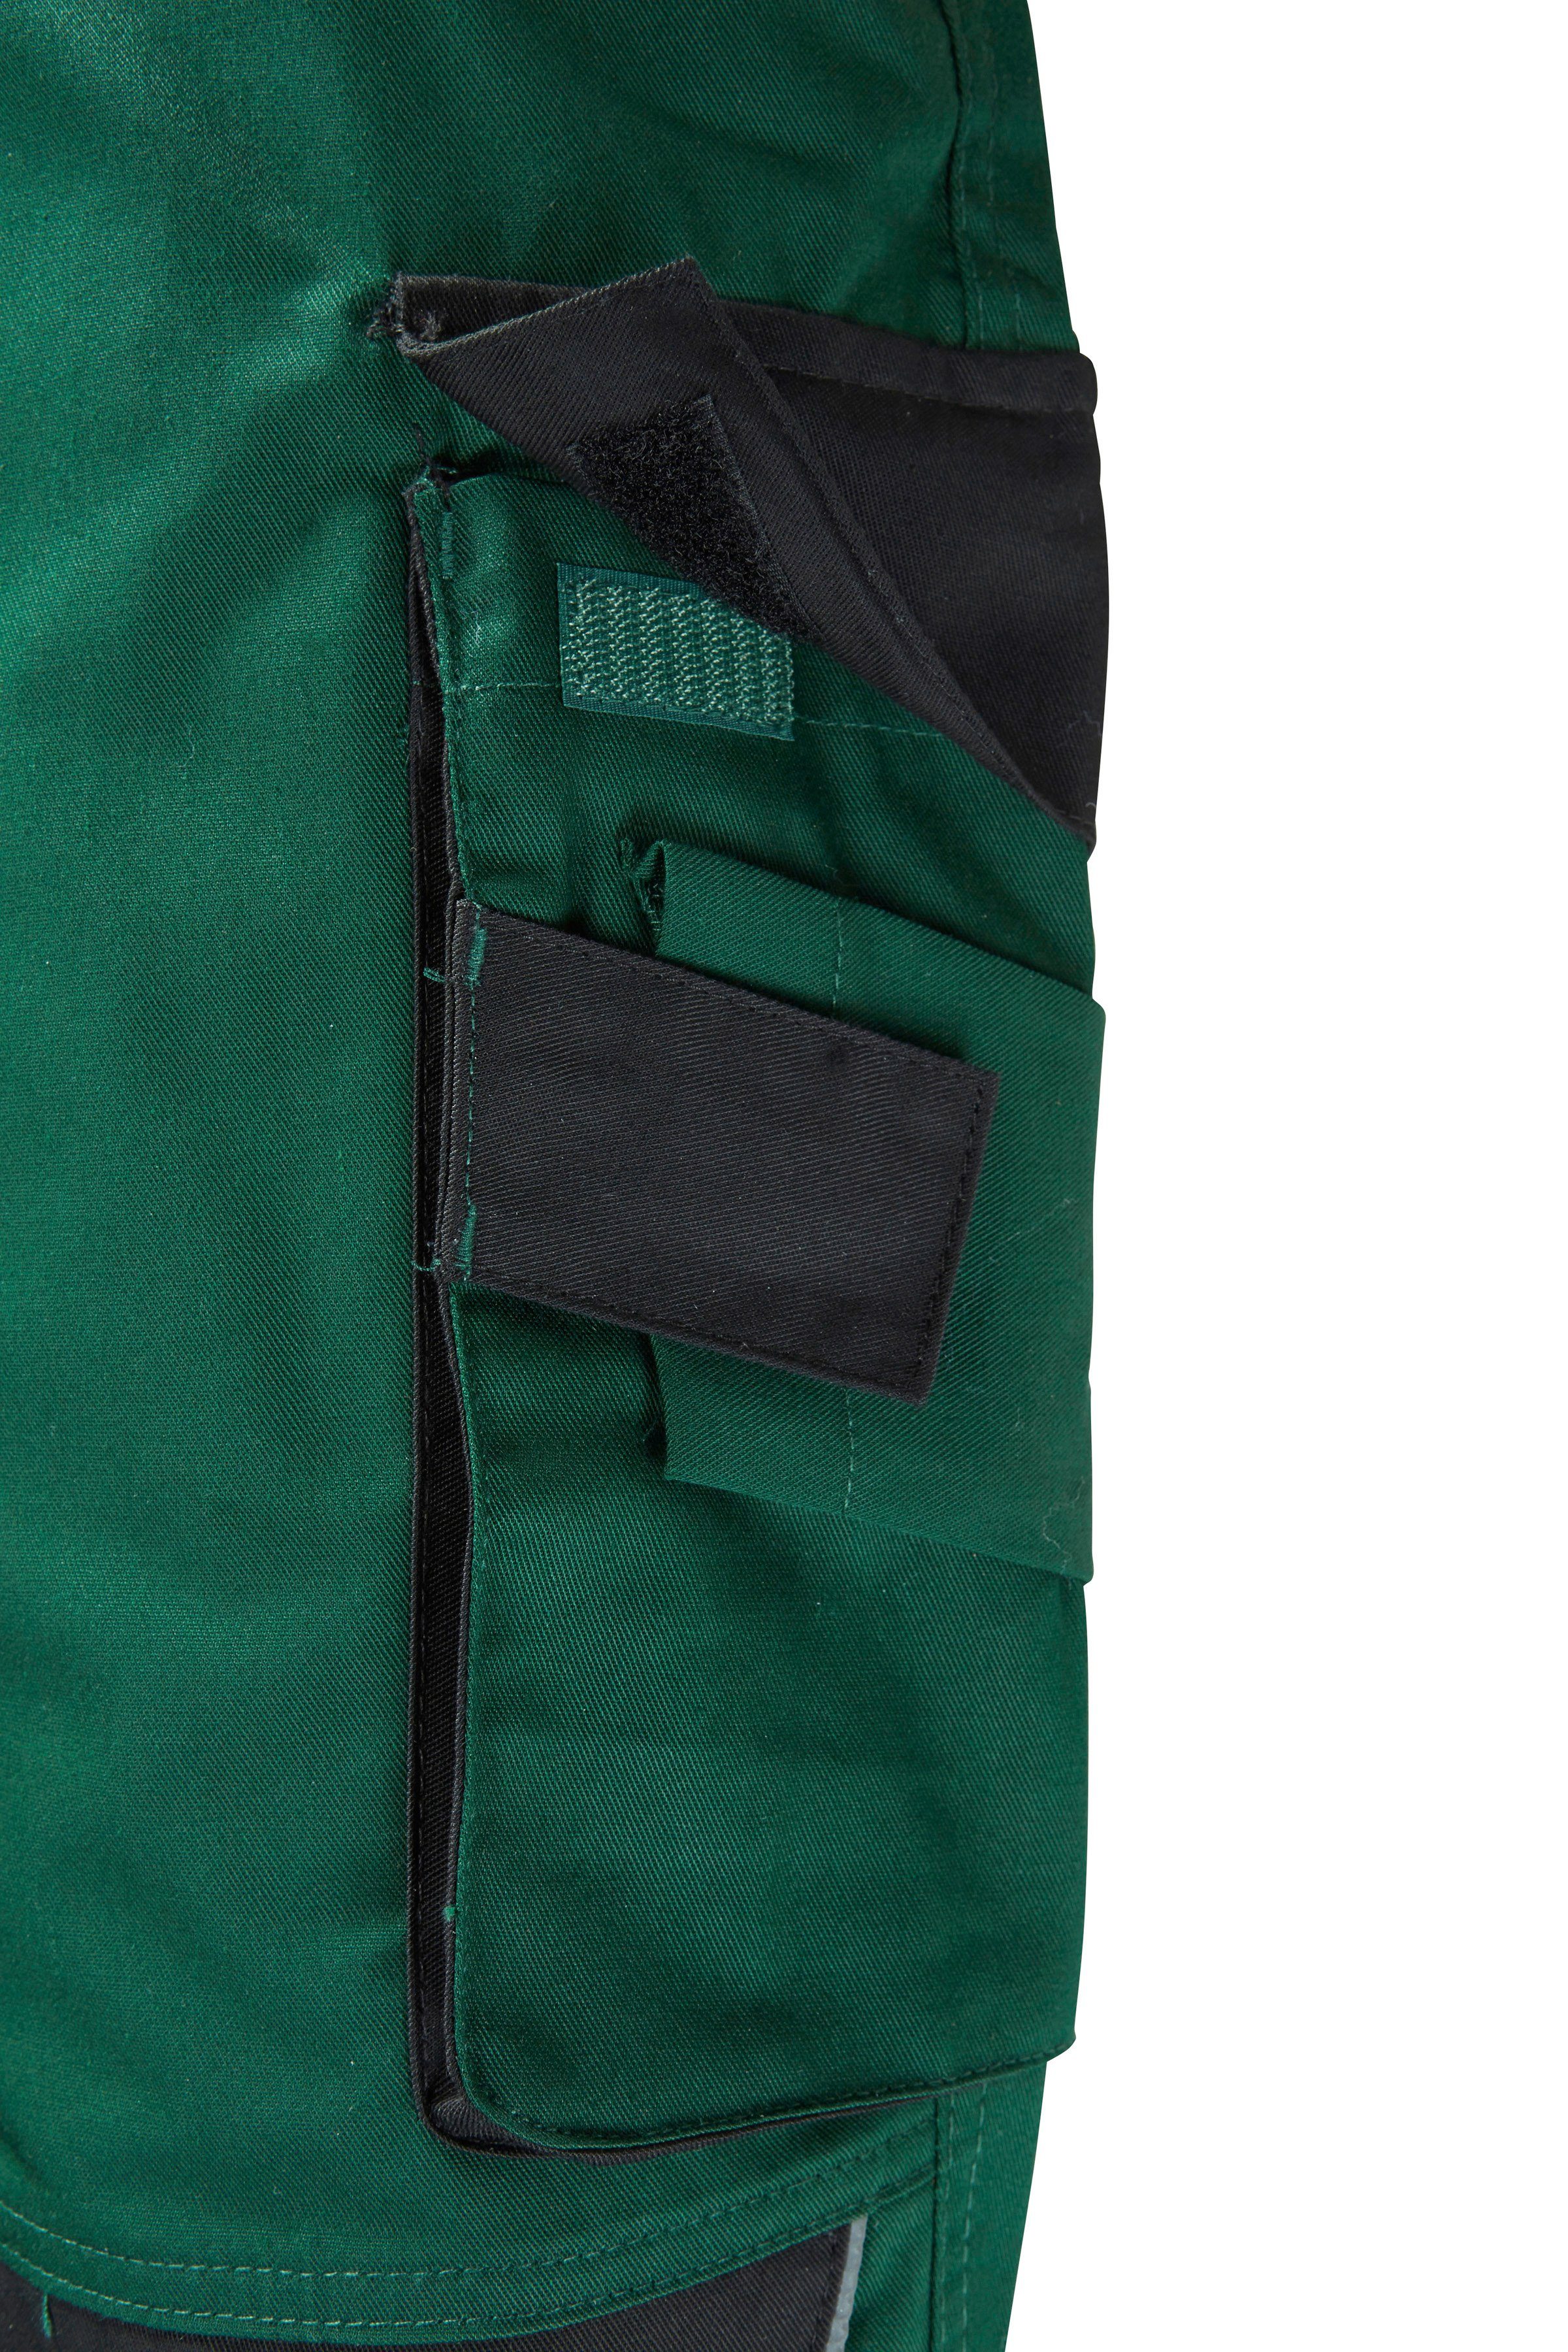 more safety& mit Reflexeinsätzen grün-schwarz Latzhose Pull